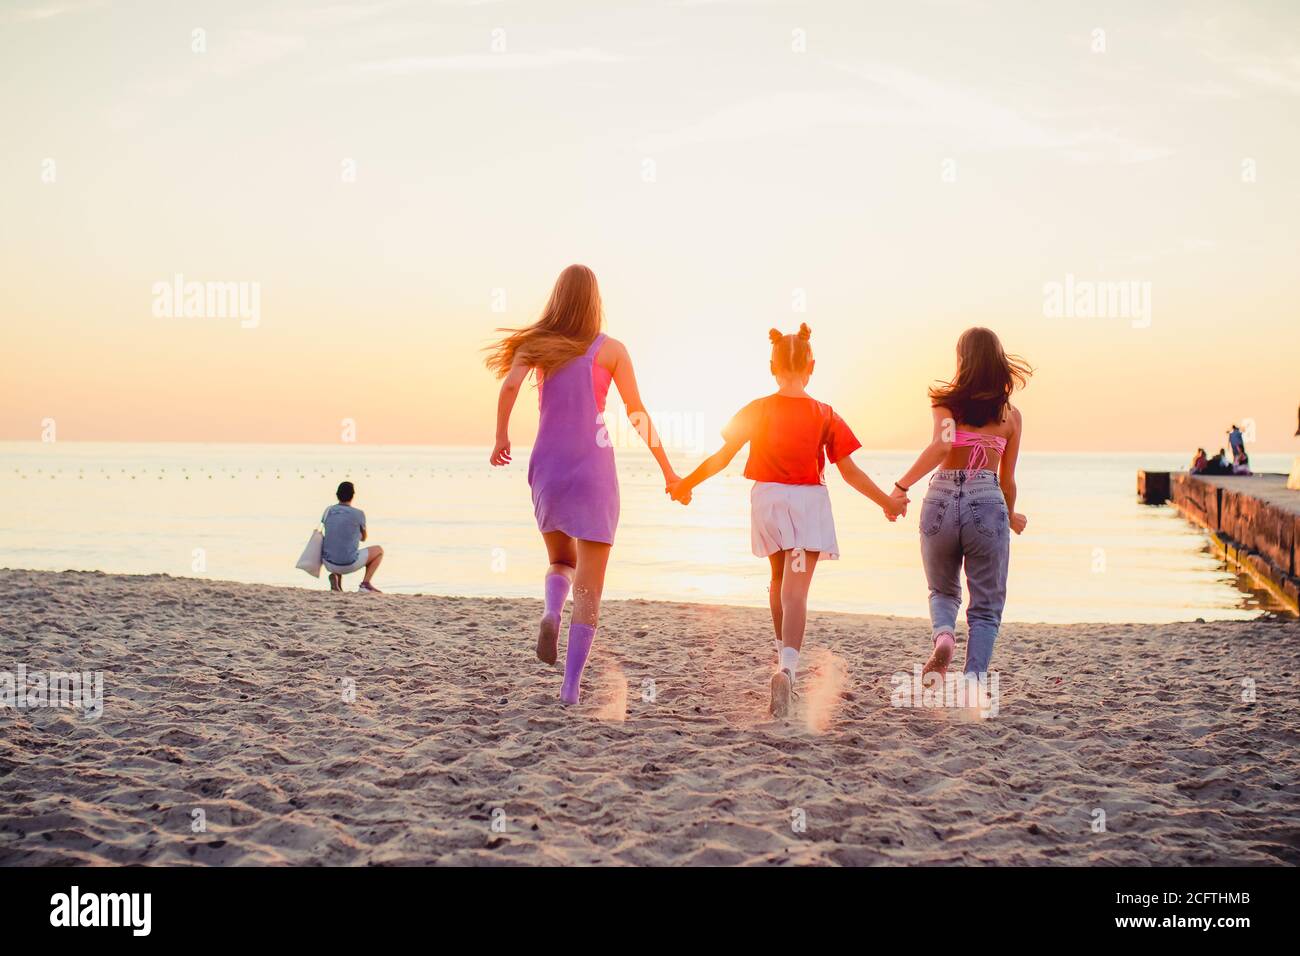 Drei junge Mädchen, die am Sandstrand entlang ins Meer laufen. 